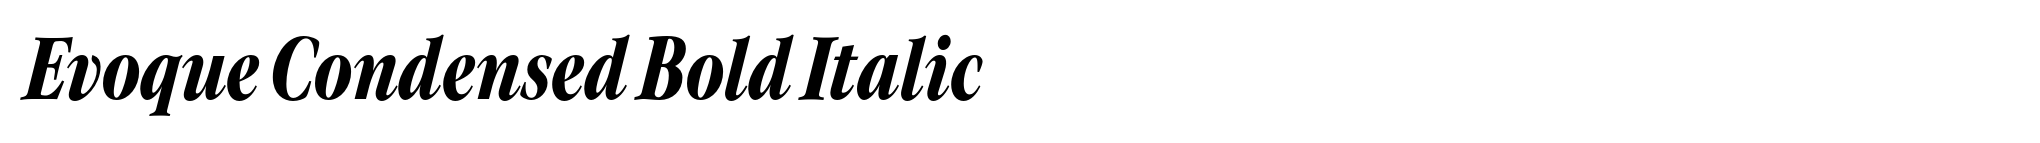 Evoque Condensed Bold Italic image